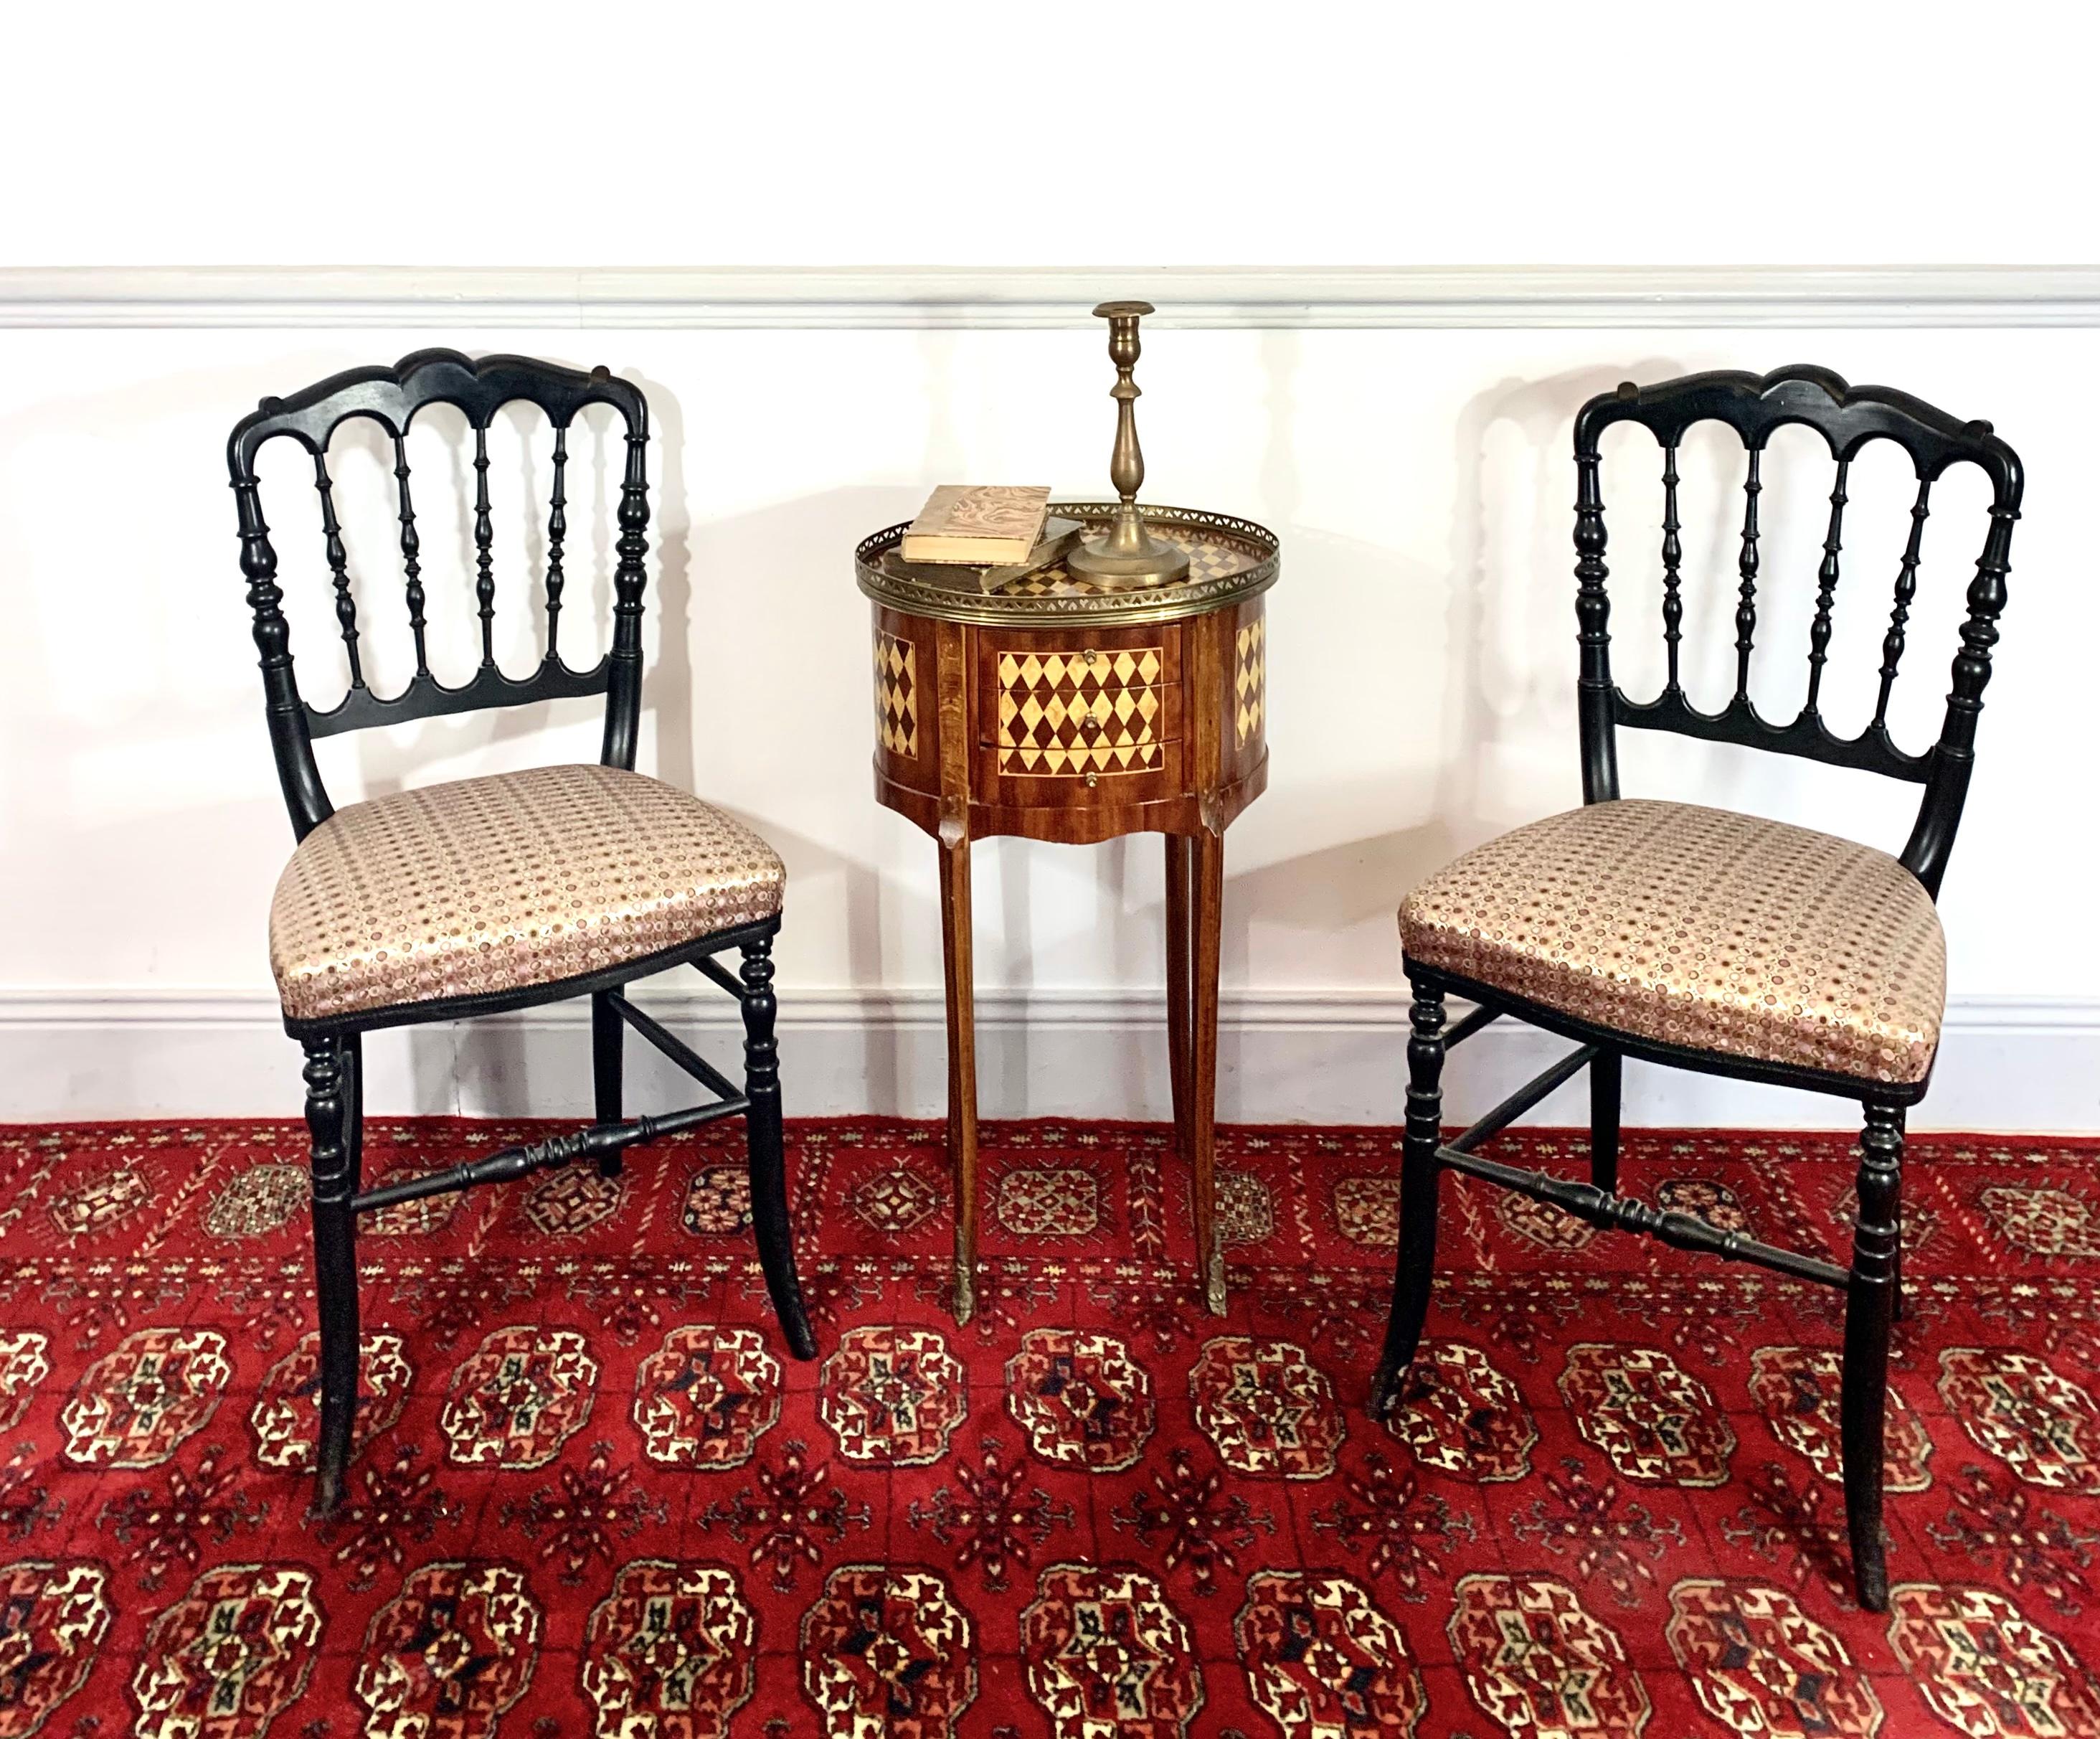 Schönes Paar Stühle im Stil von Napoleon III. Das Gestell dieses Stuhls ist aus geschwärztem Holz gefertigt. Die Pfosten sind aus gedrechseltem Holz gefertigt. Die Sitzfläche ist mit einem Jacquard-Stoff in violetten Farben bezogen.